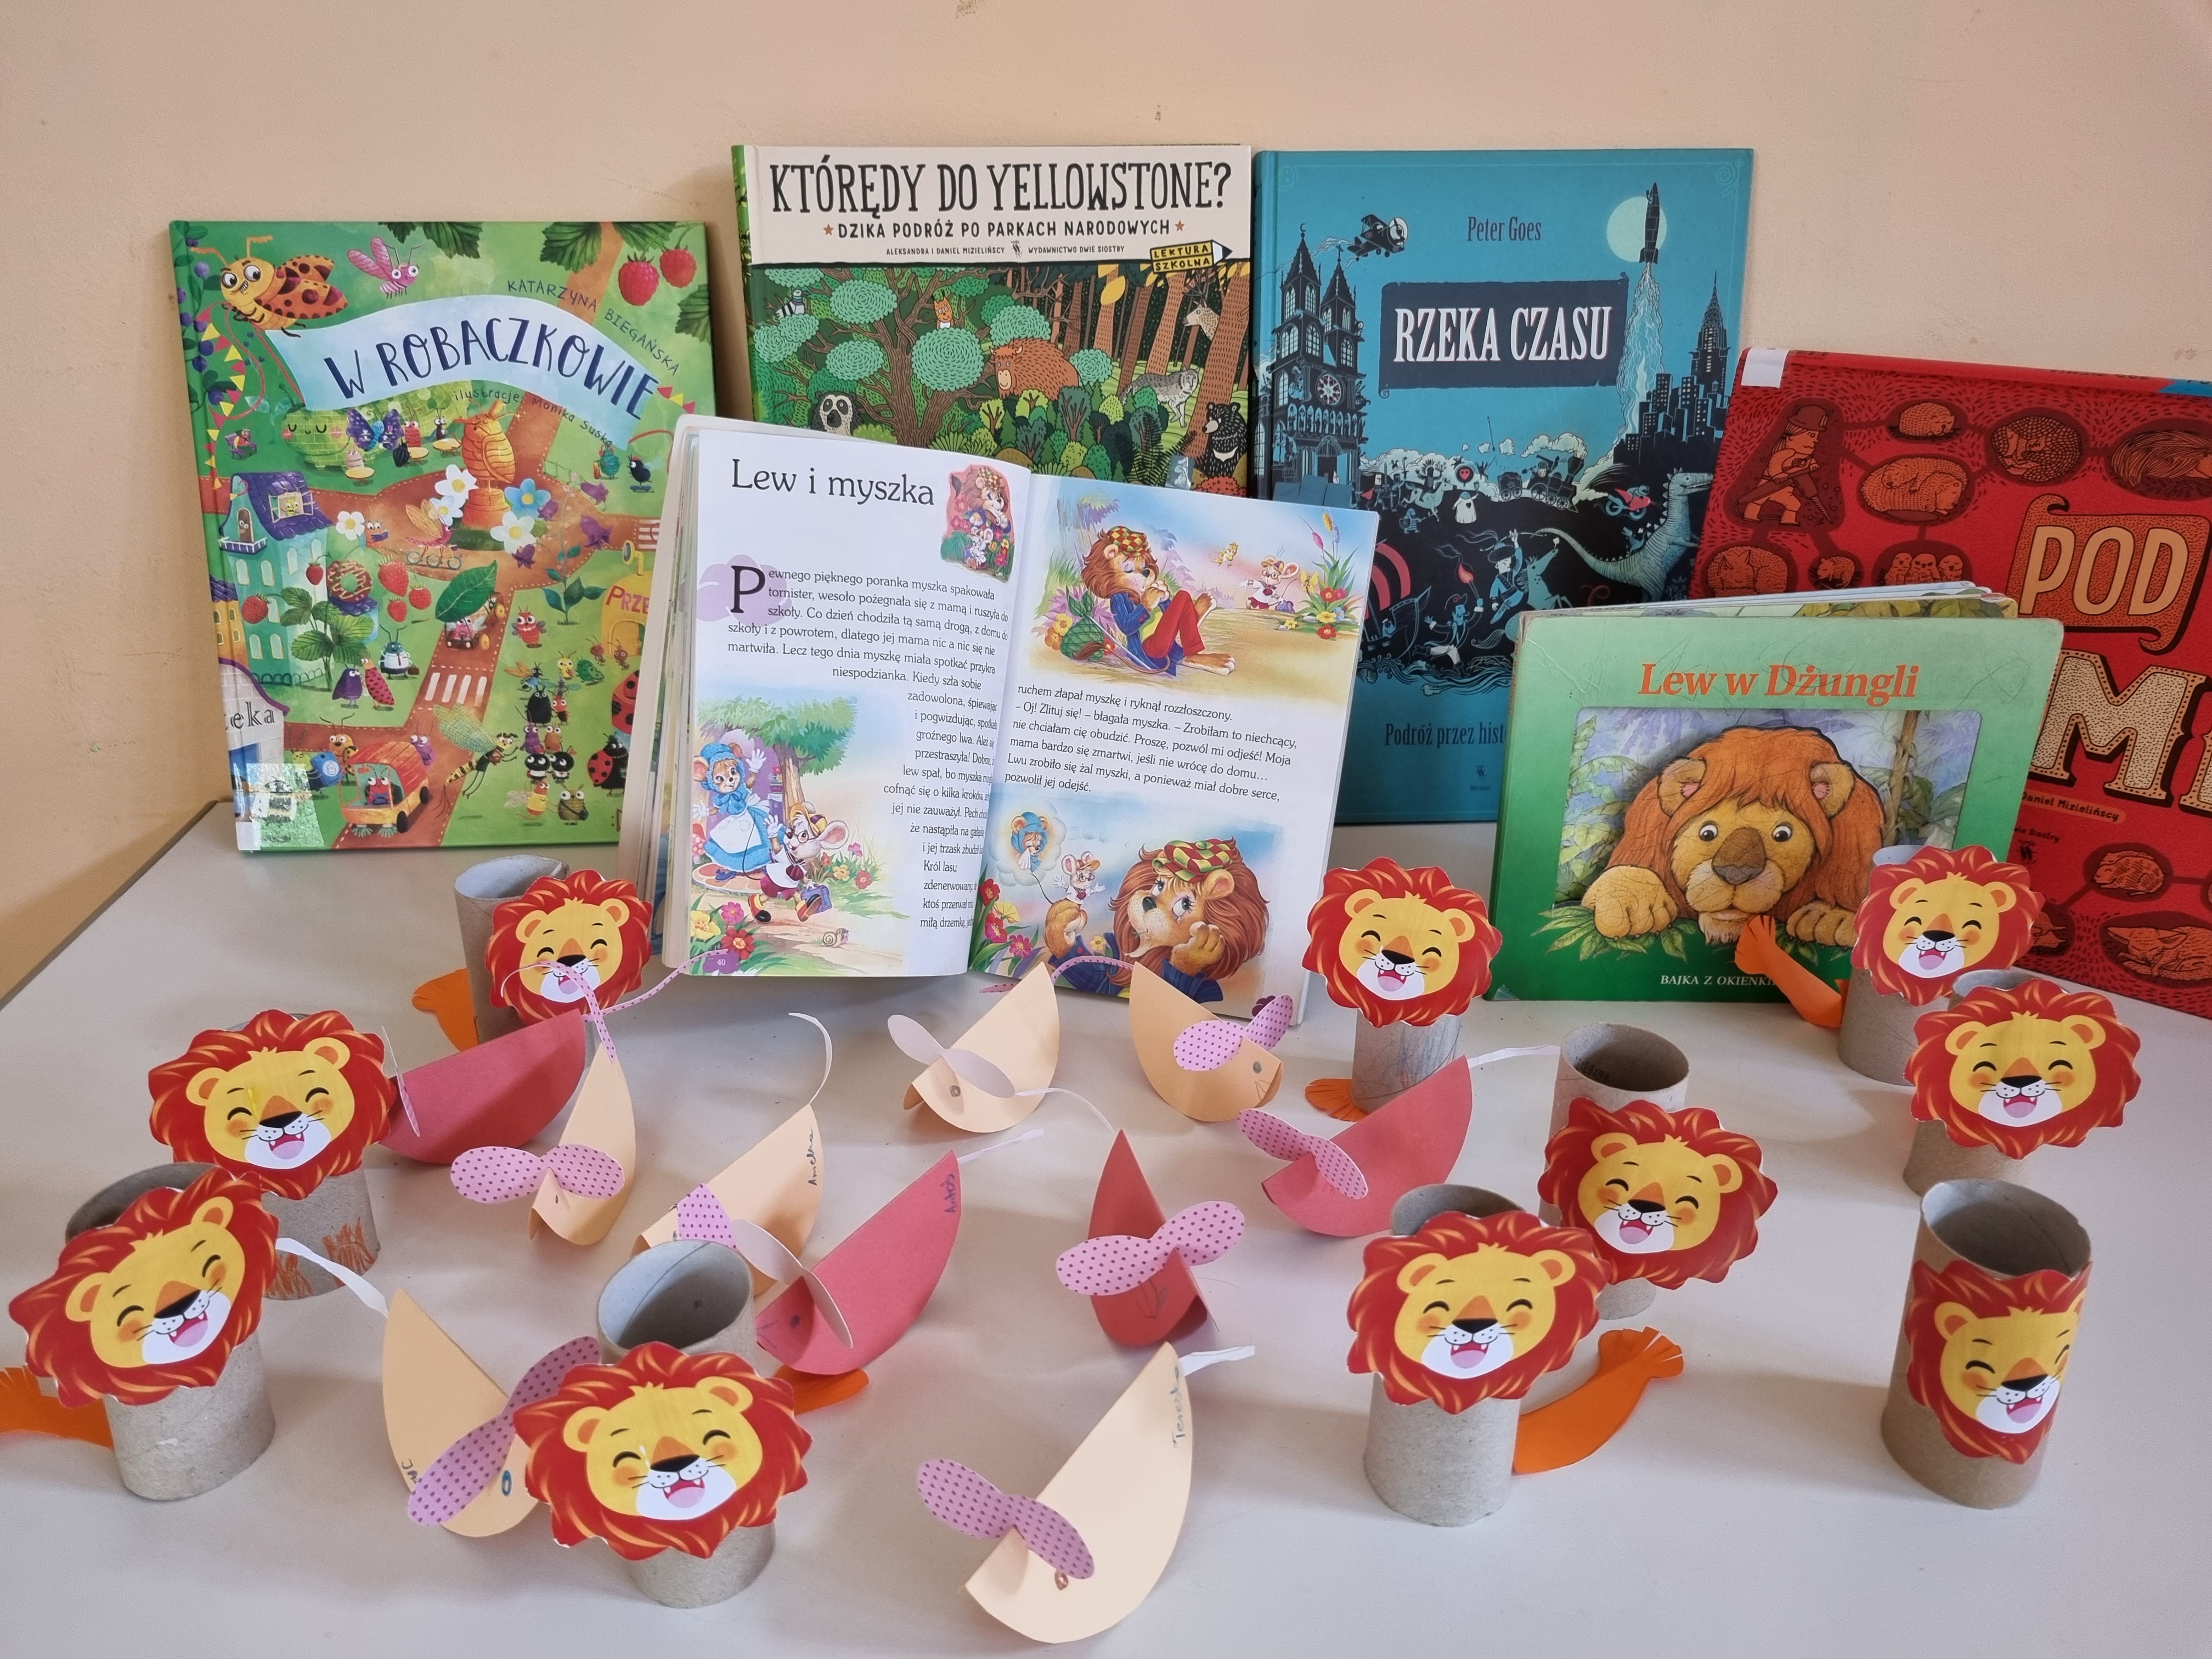 Na jasnym stole leżą papierowe prace plastyczne przedstawiające lwy, wykonane przez dzieci. Za nimi ustawione są kolowe książki dla dzieci, niektóre z nich mówią o lwach.